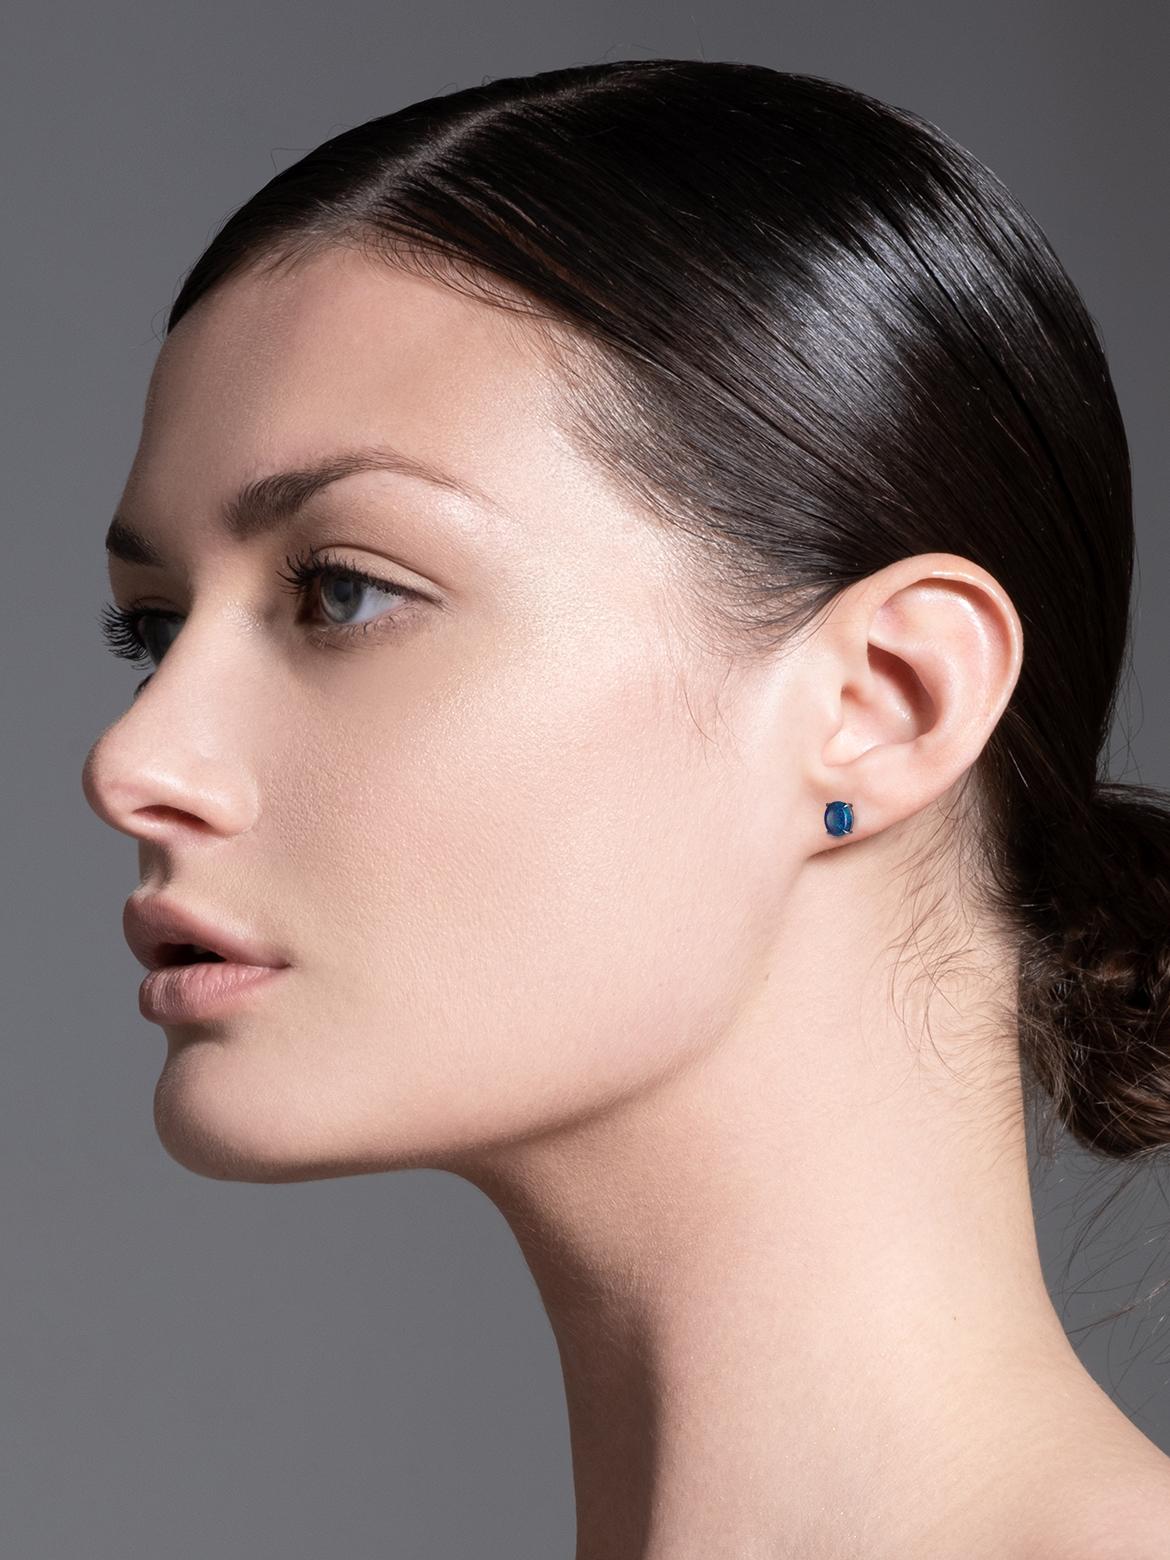 mens opal earrings